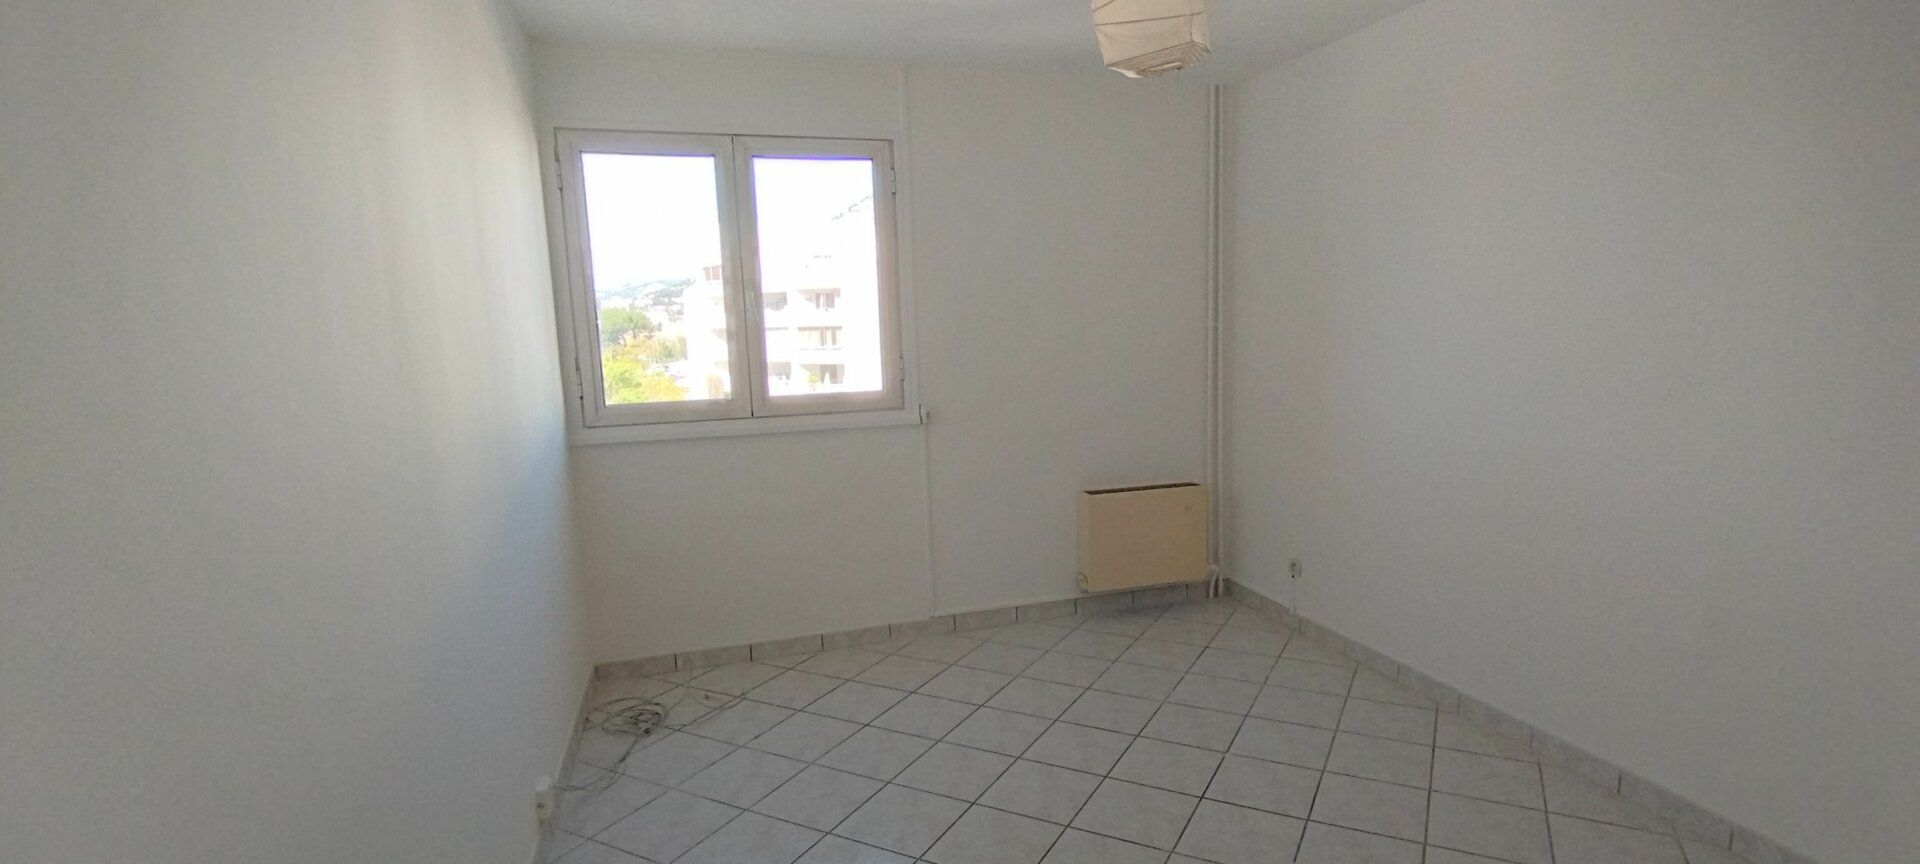 Appartement à vendre 3 82m2 à Toulon vignette-5